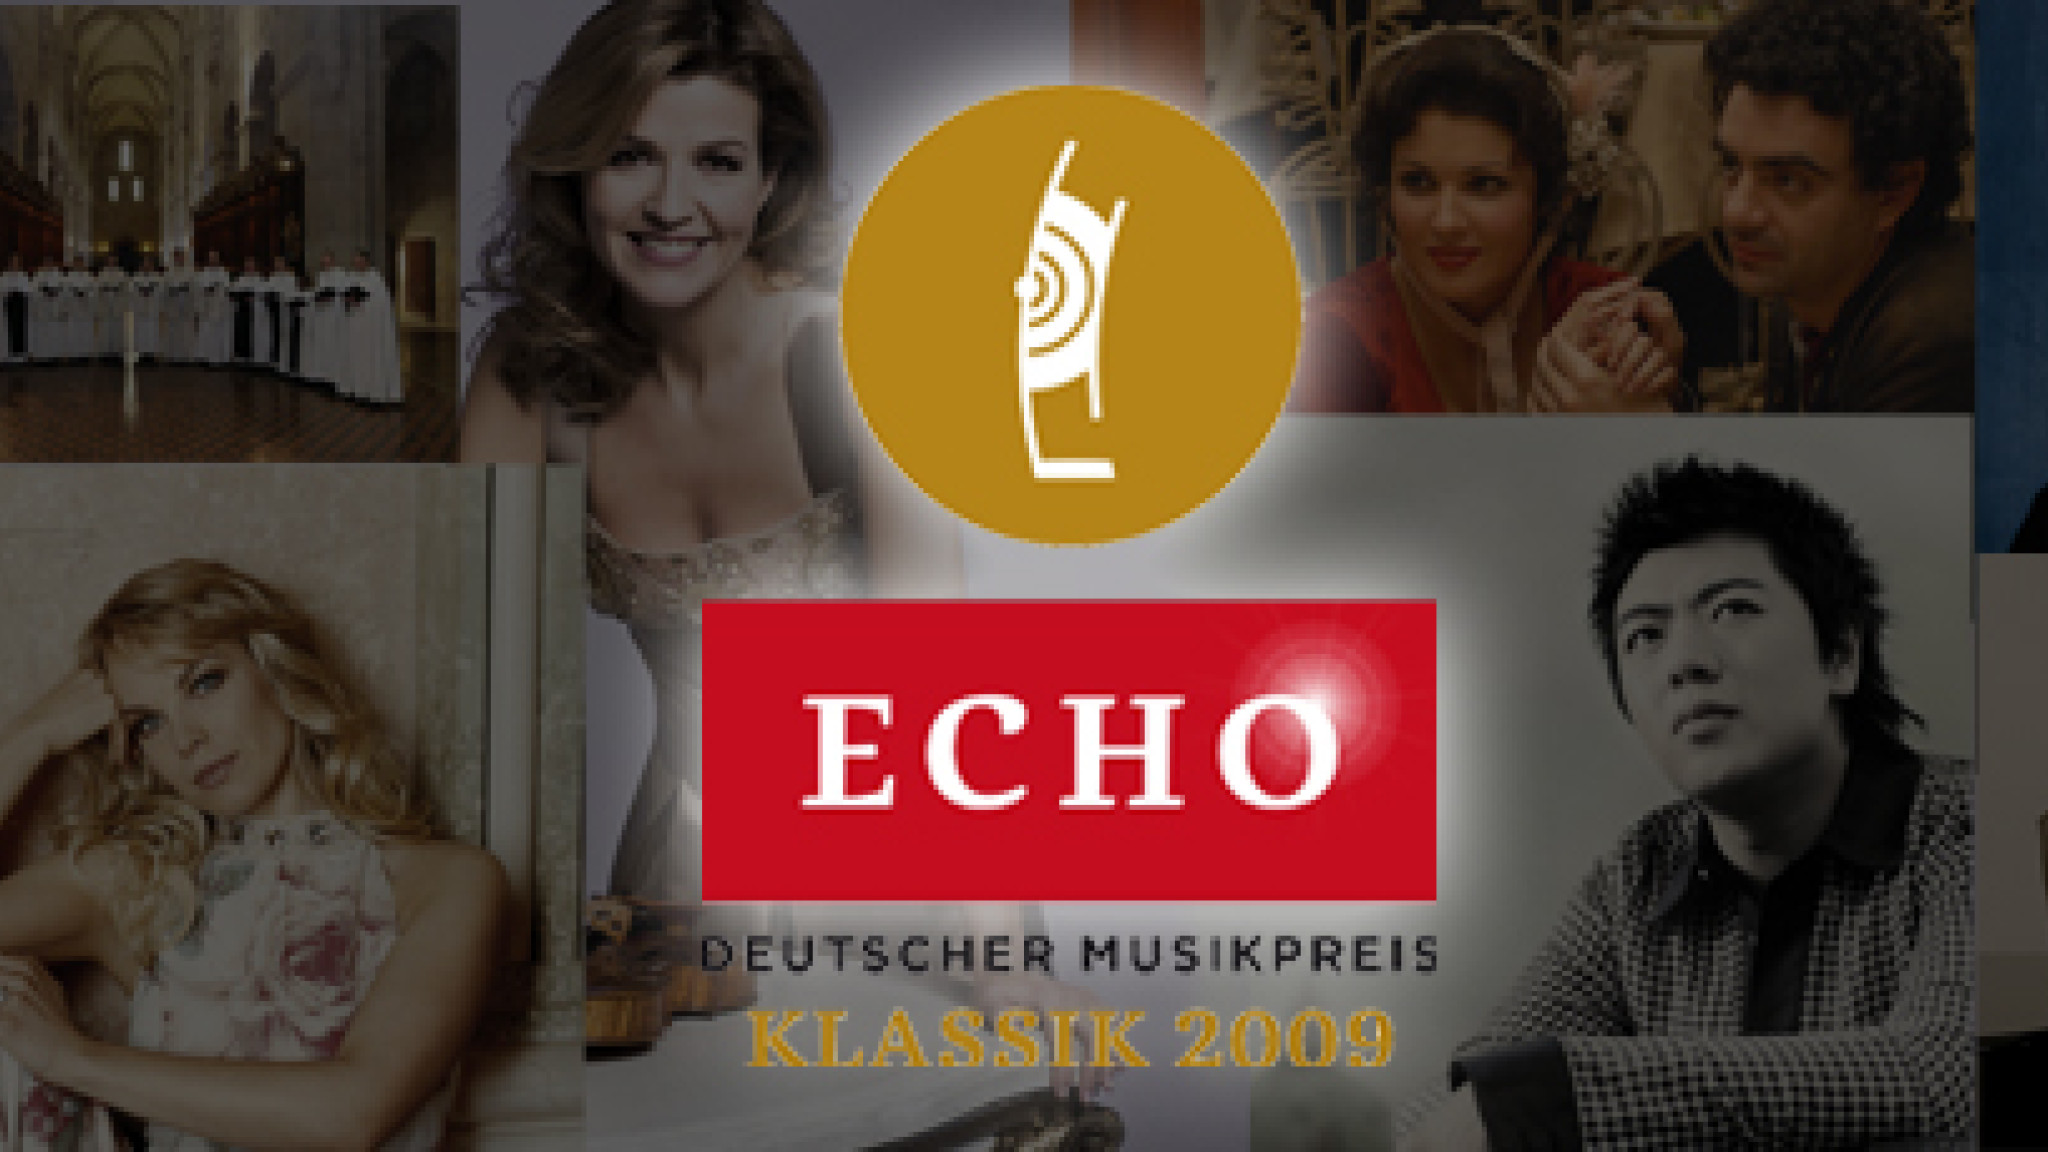 Die Sieger des Echo Klassik 2009 stehen fest